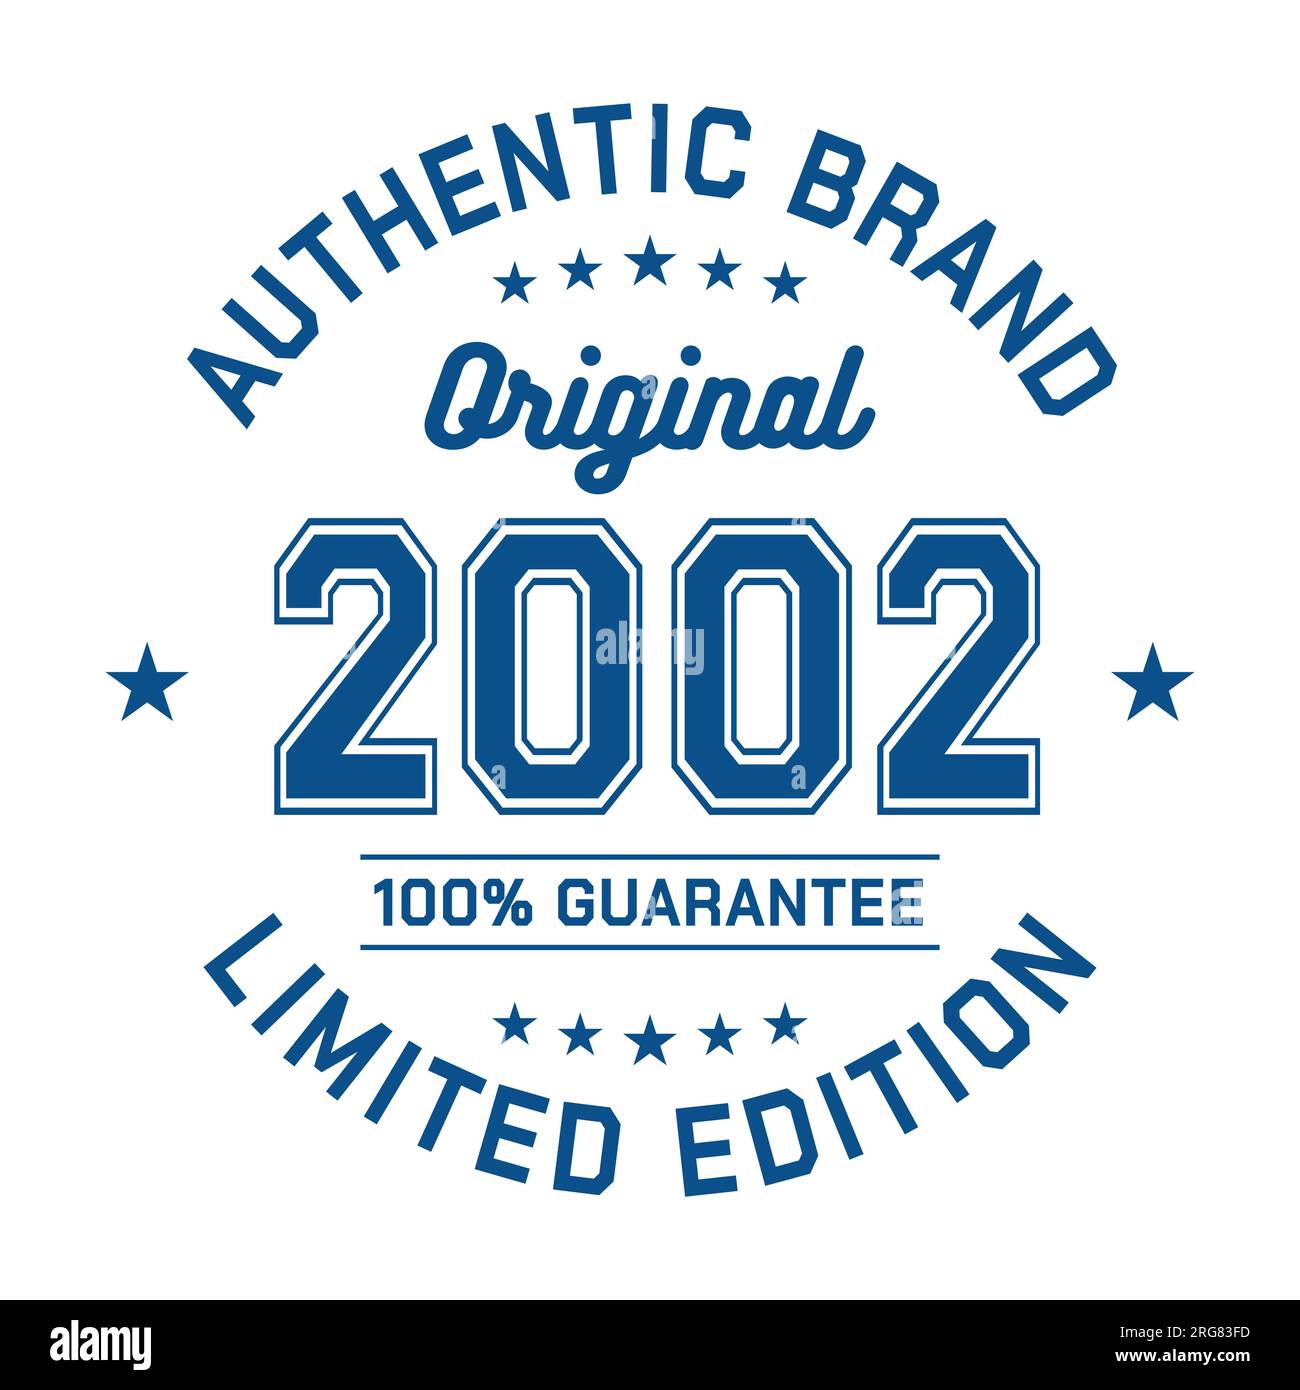 2002 marque authentique. Design de mode vestimentaire. Design graphique pour t-shirt. Vecteur et illustration. Illustration de Vecteur